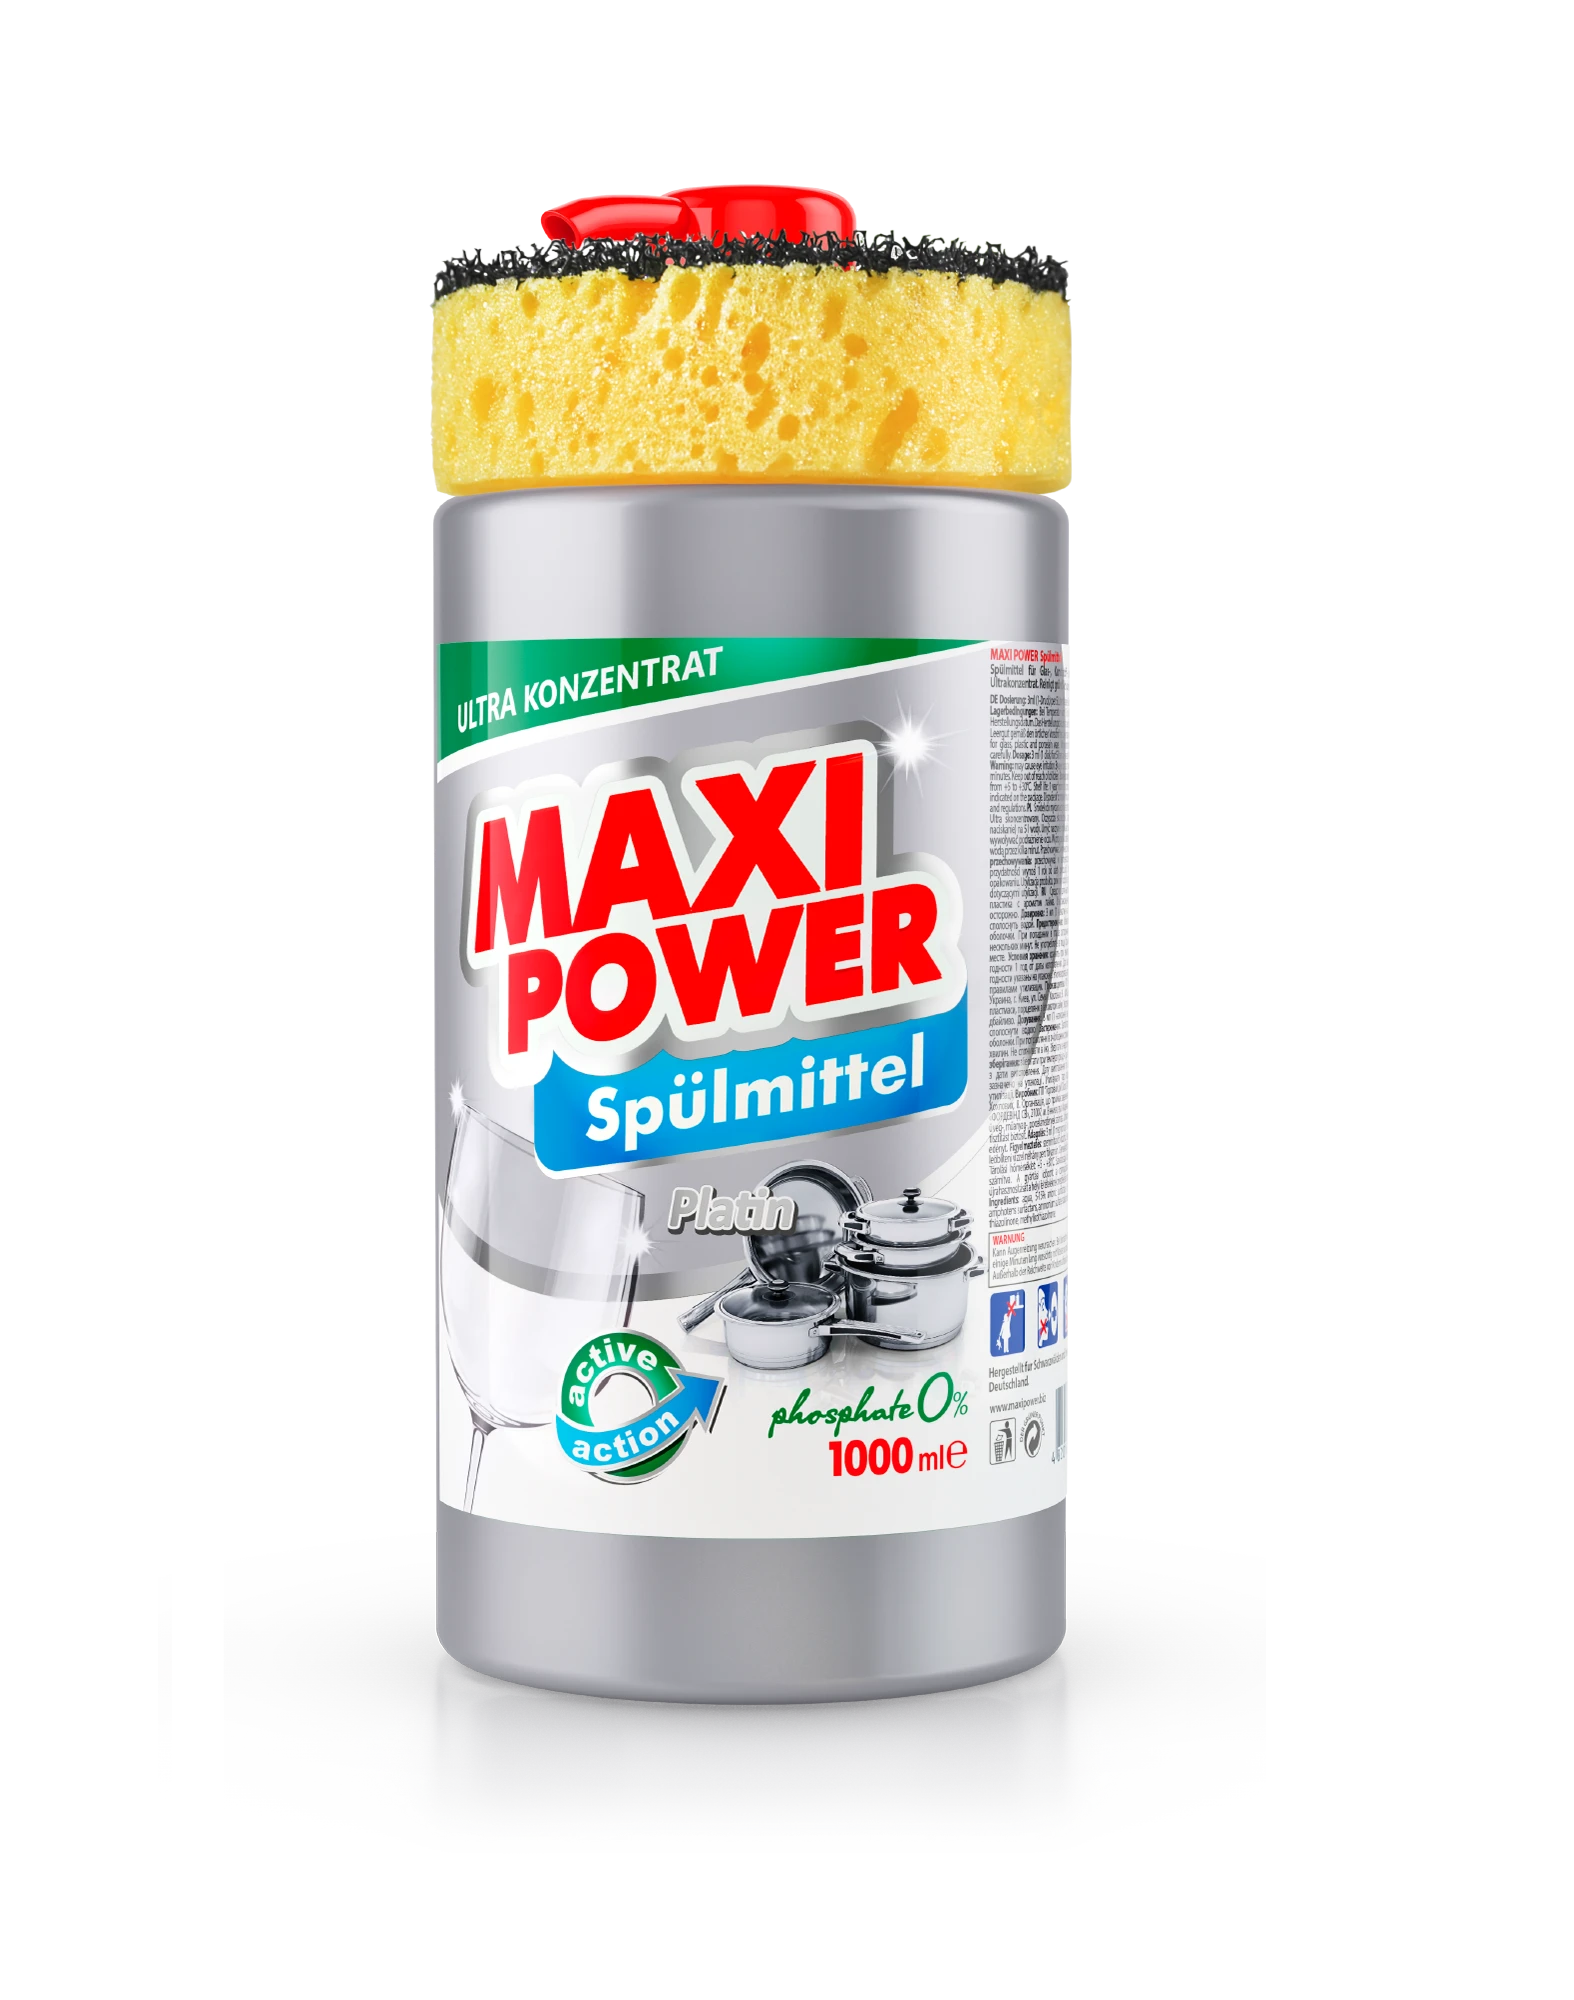 Maxi Power Dishwashing detergent Platinum